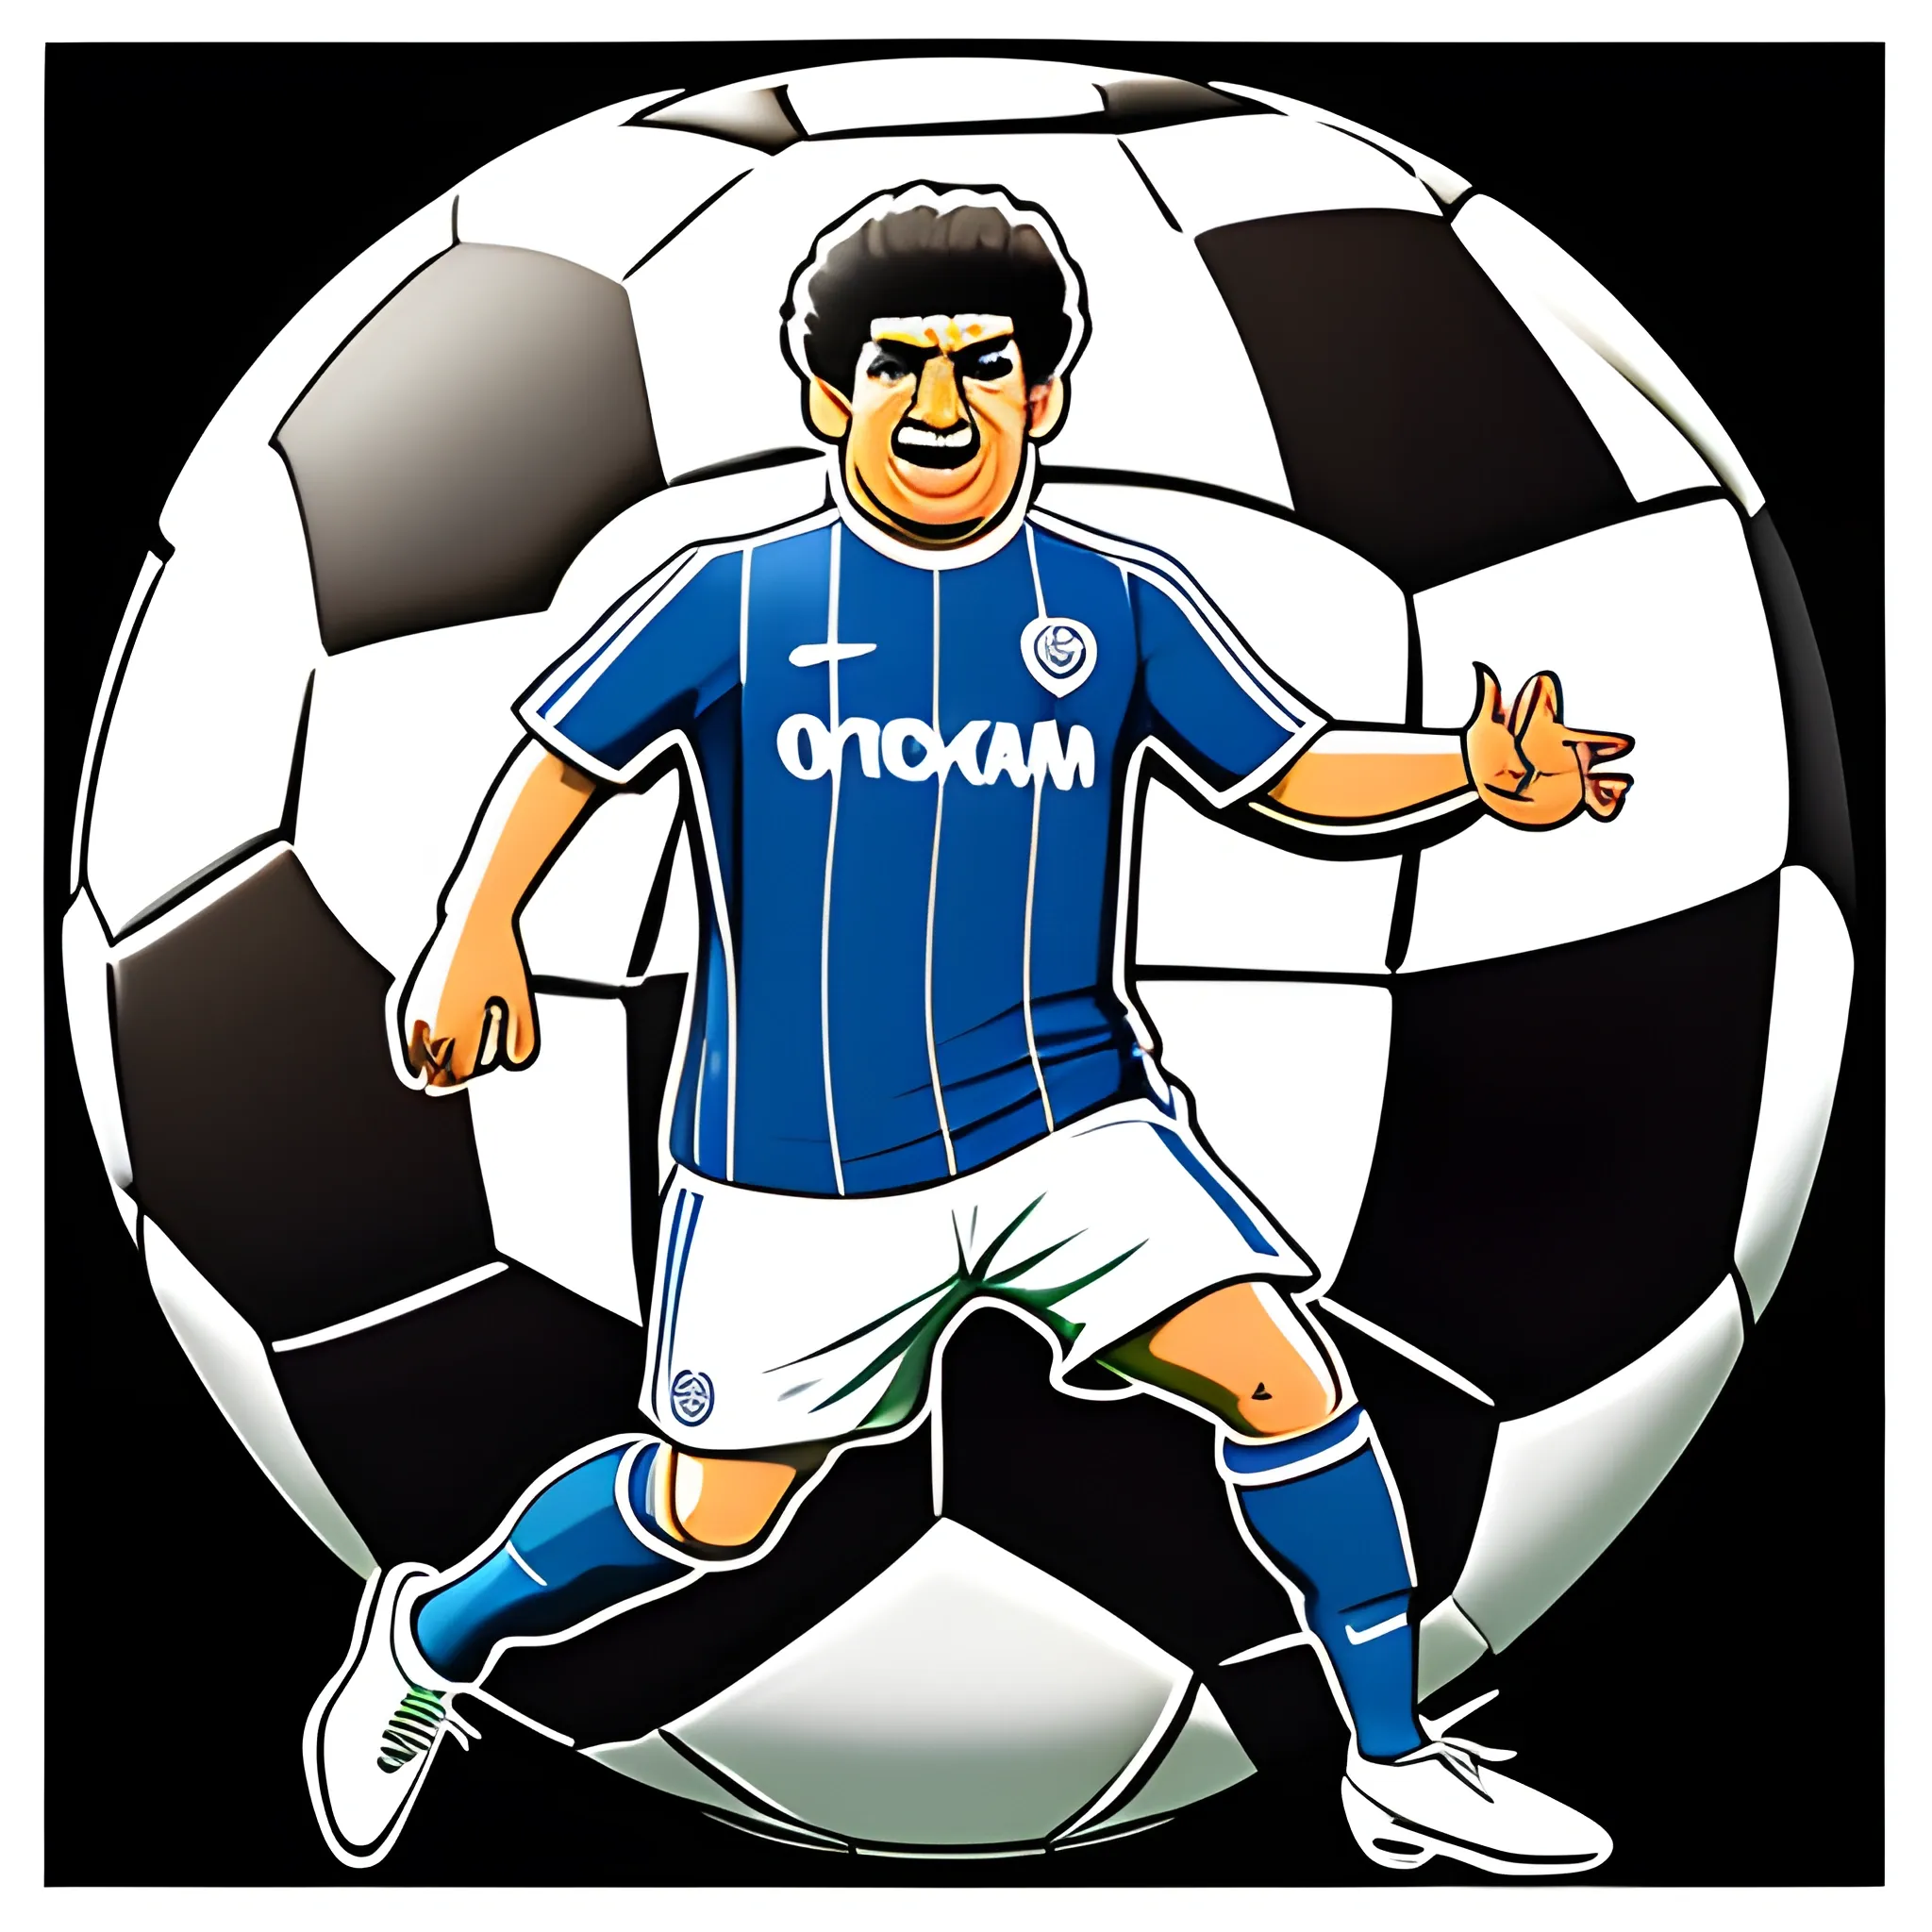 Character, soccer ballon, Maradona face. Toon style